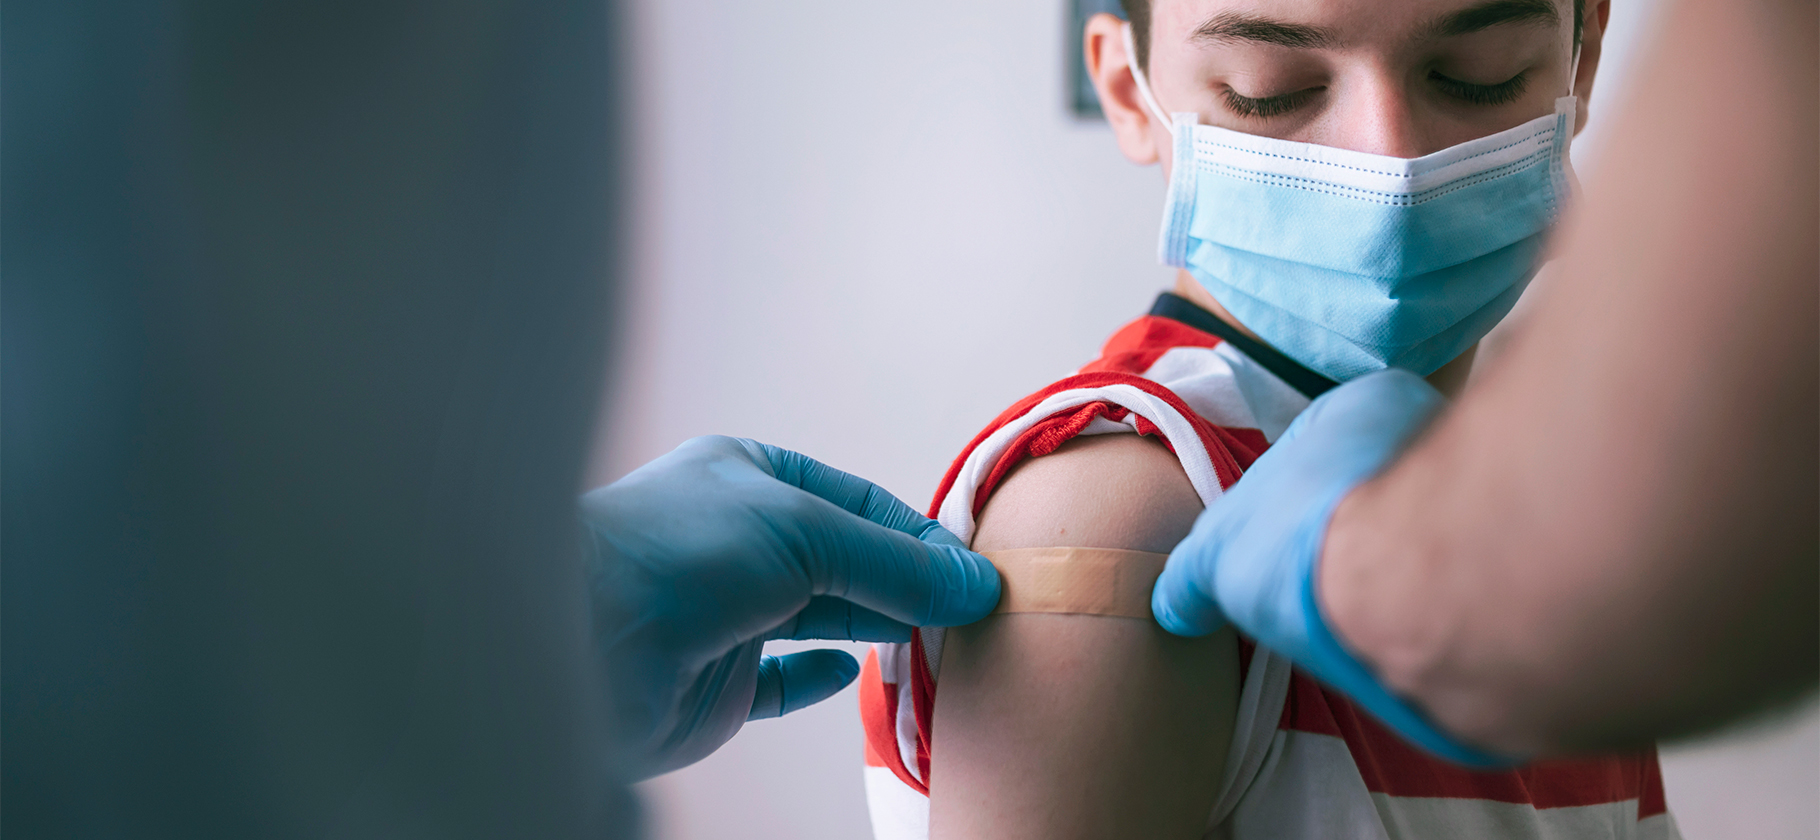 В России началась вакцинация подростков от коронавирусной инфекции